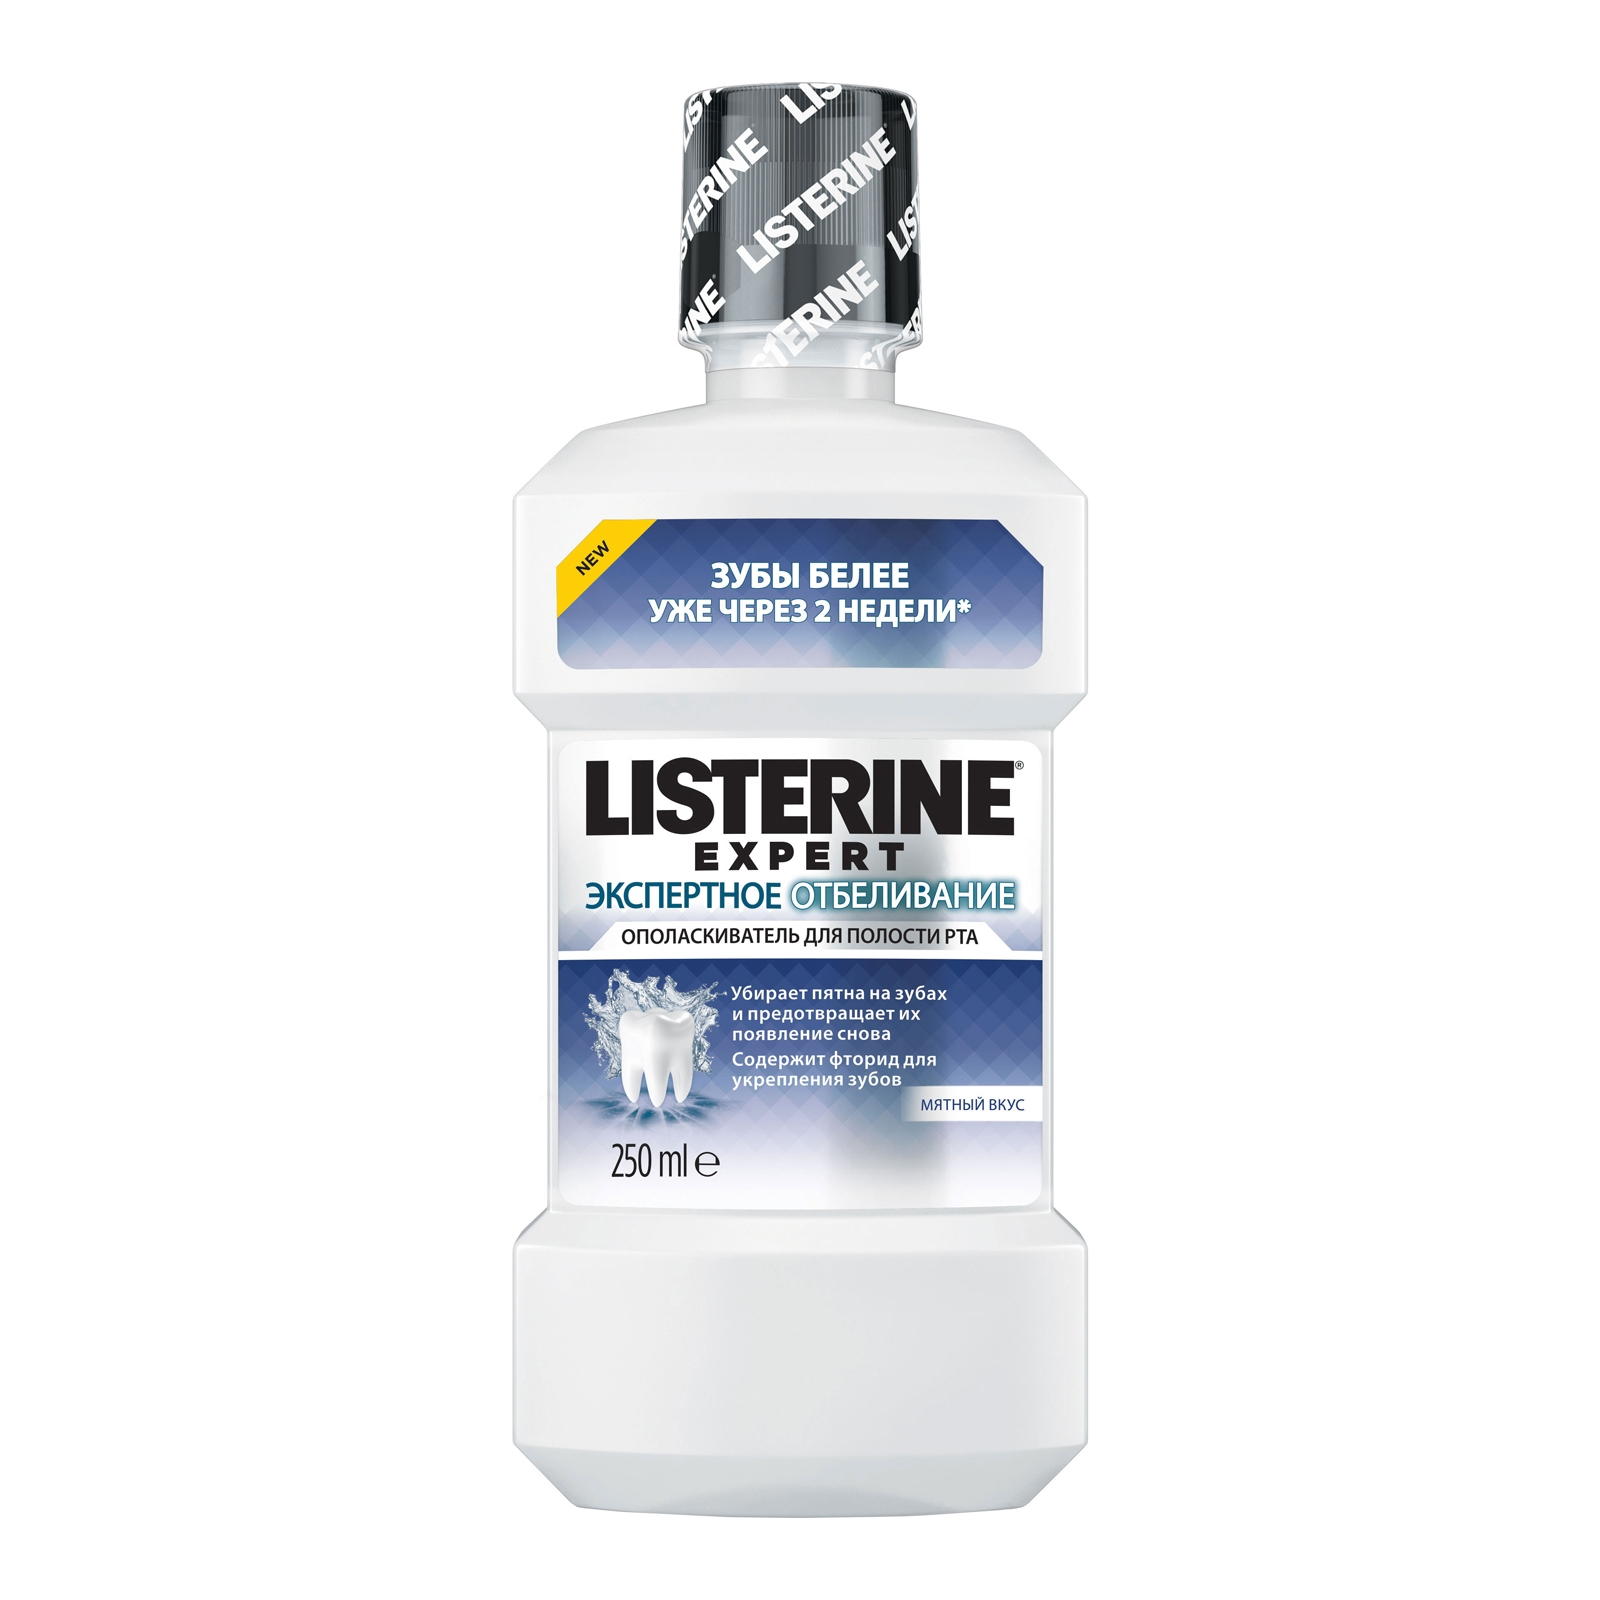 Ополаскиватель для полости рта Listerine Expert Экспертное отбеливание 250 мл (3574661207025)